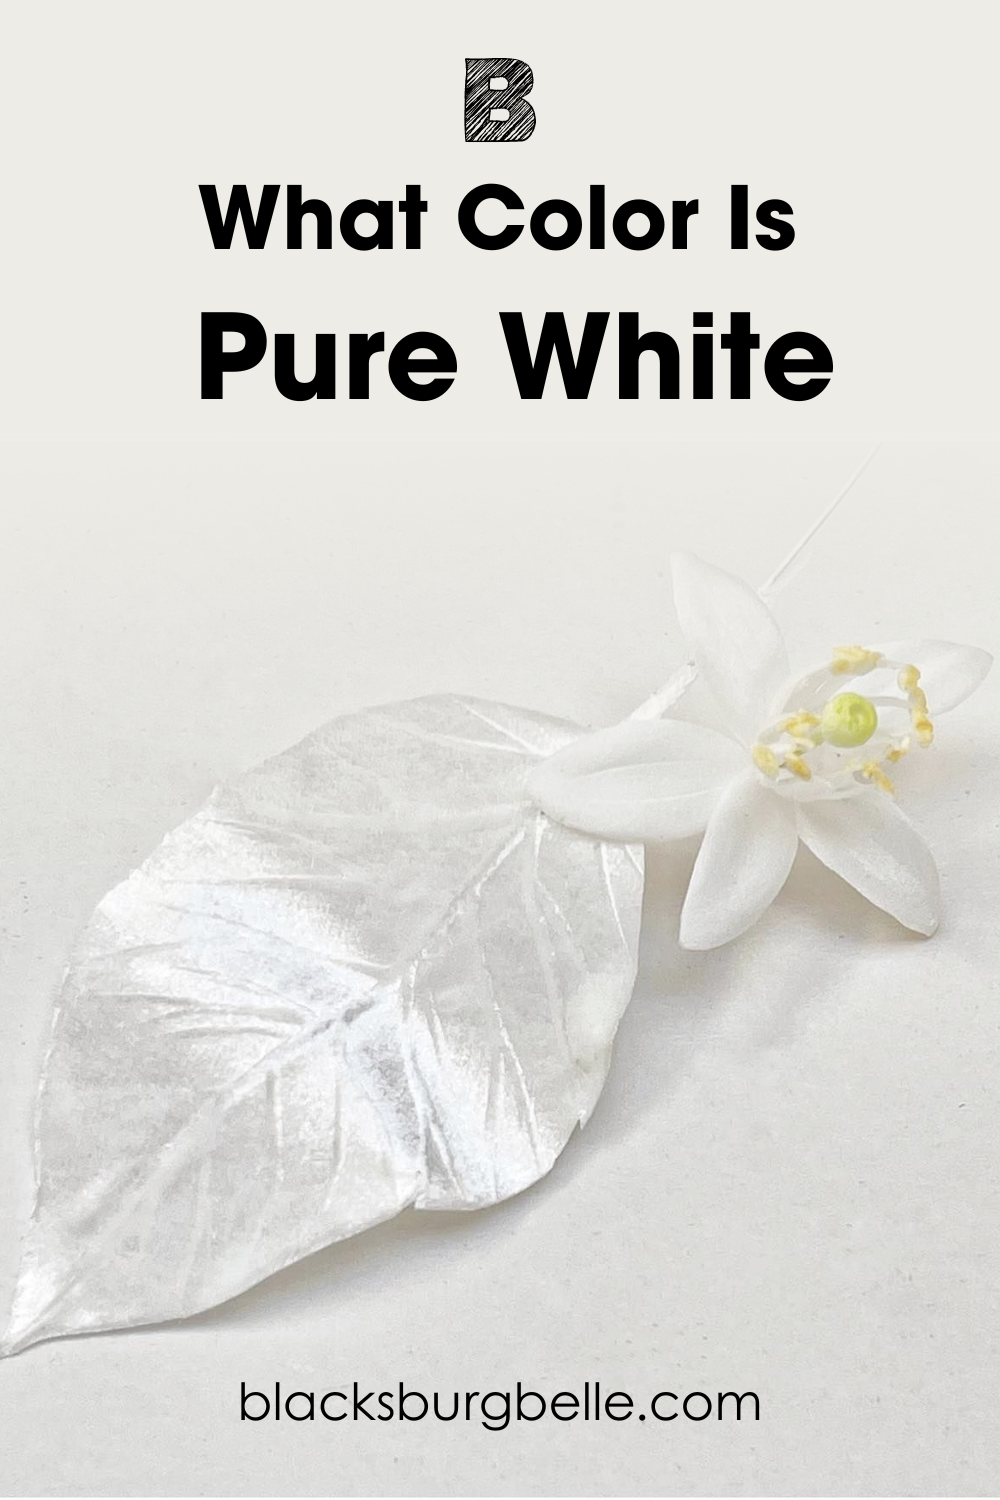 Sherwin Williams Pure White SW 7005 